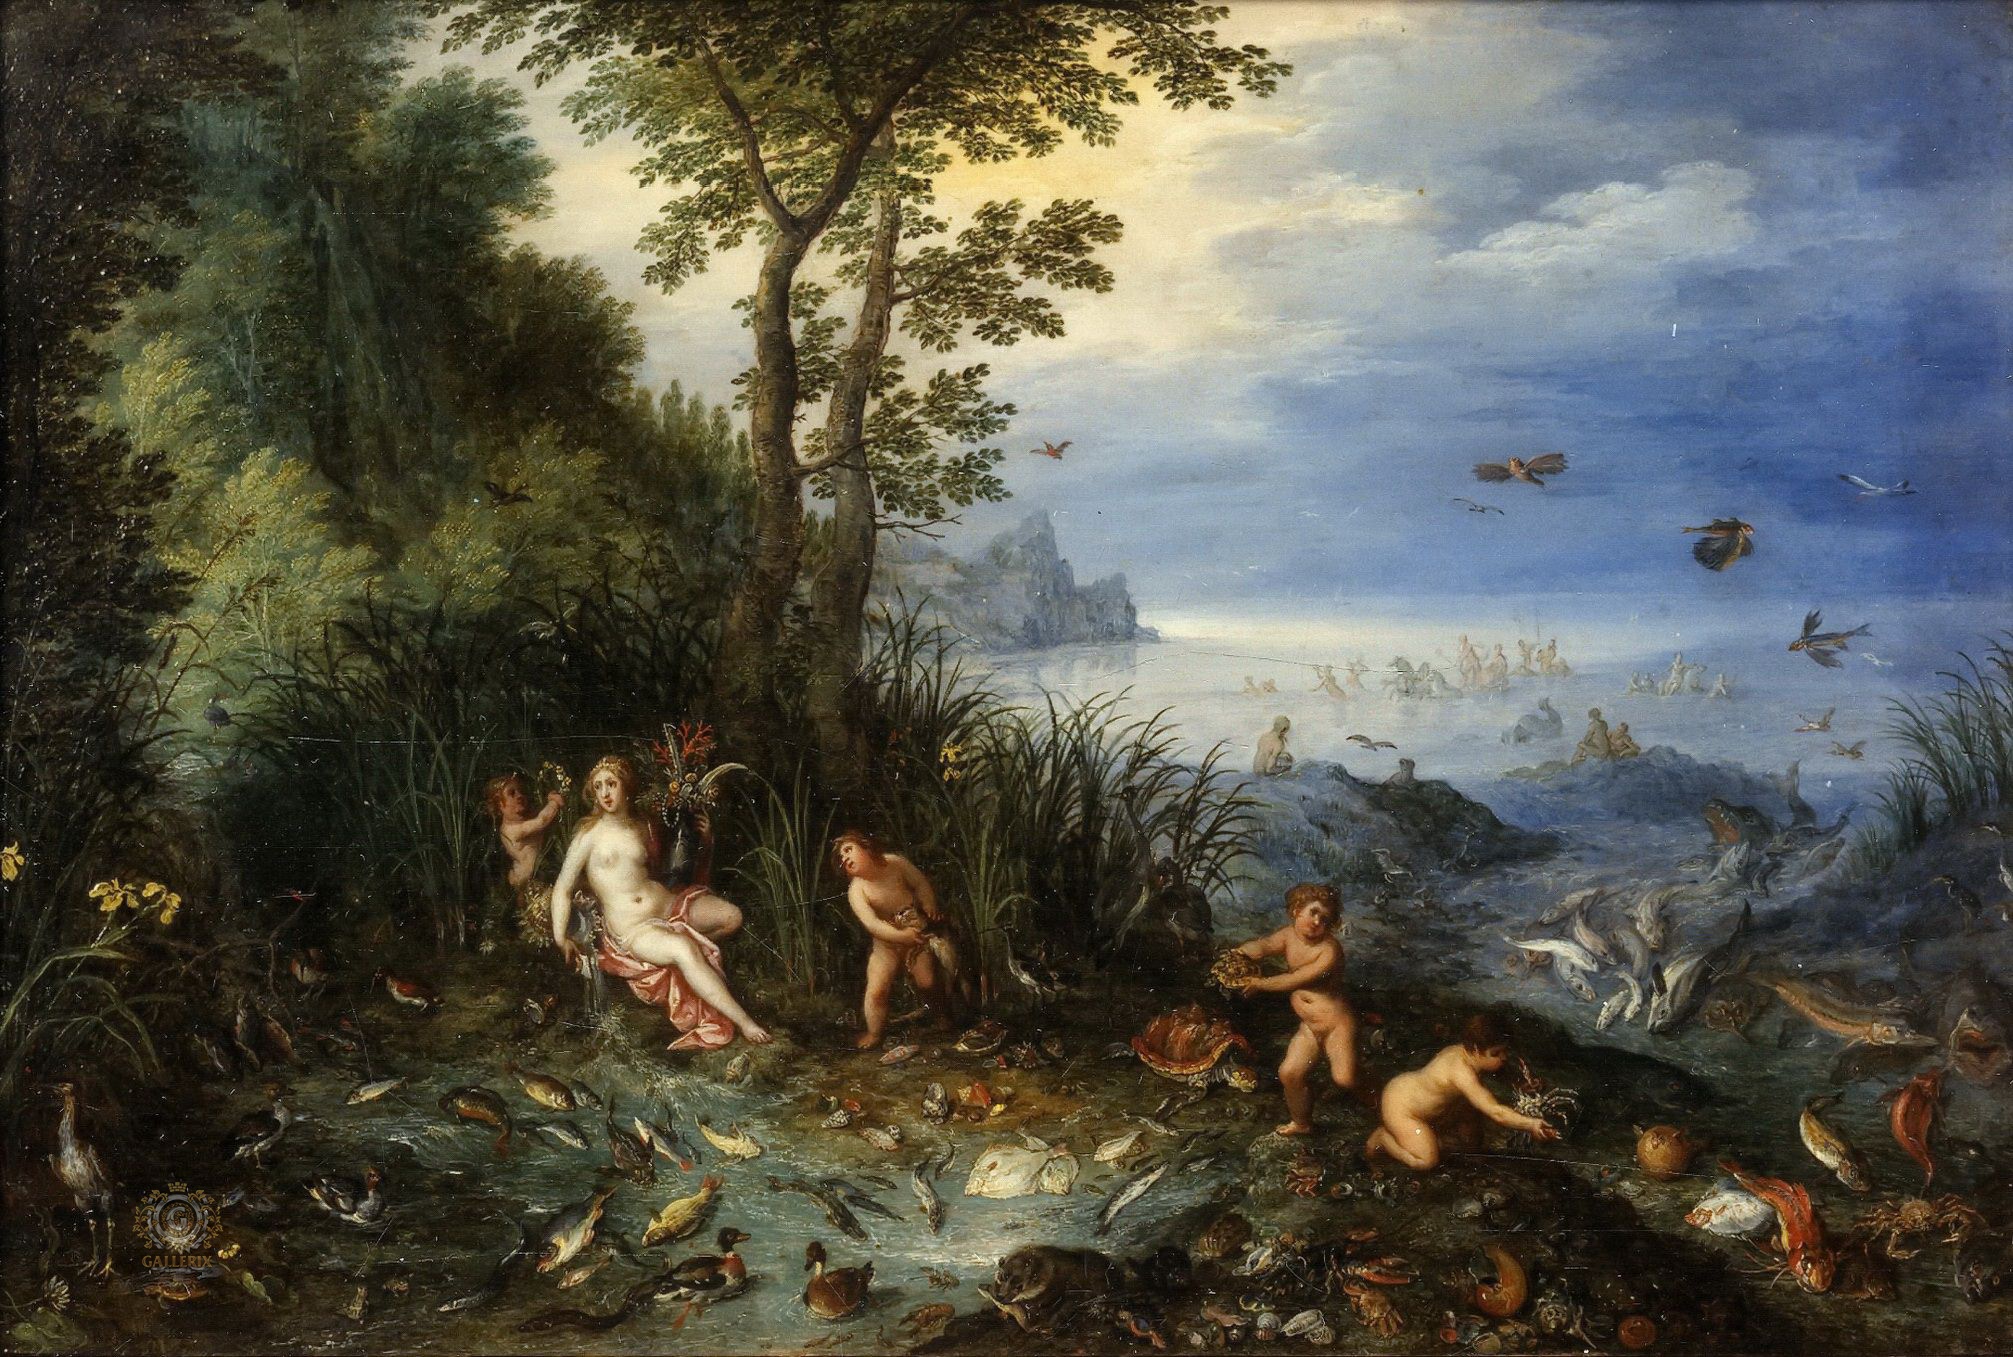 Ян Бпейгель Старший. "Аллегория воды". 1610. Частная коллекция.